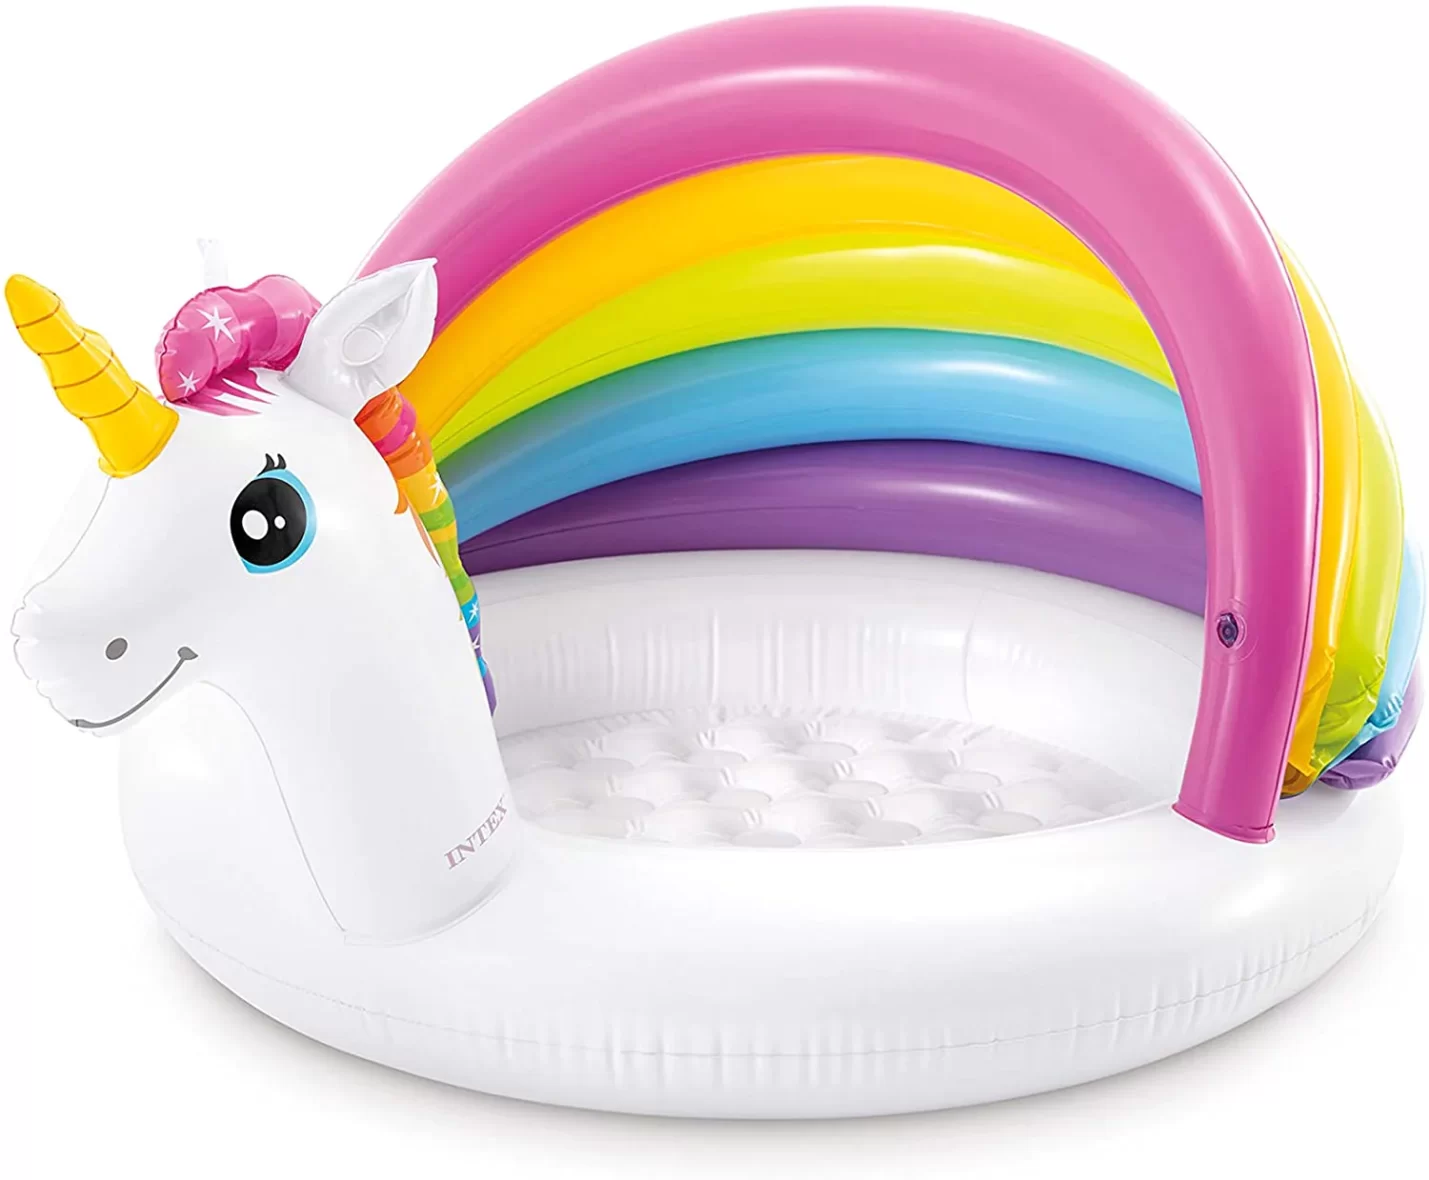 Intex Unicorn Baby Pool hood